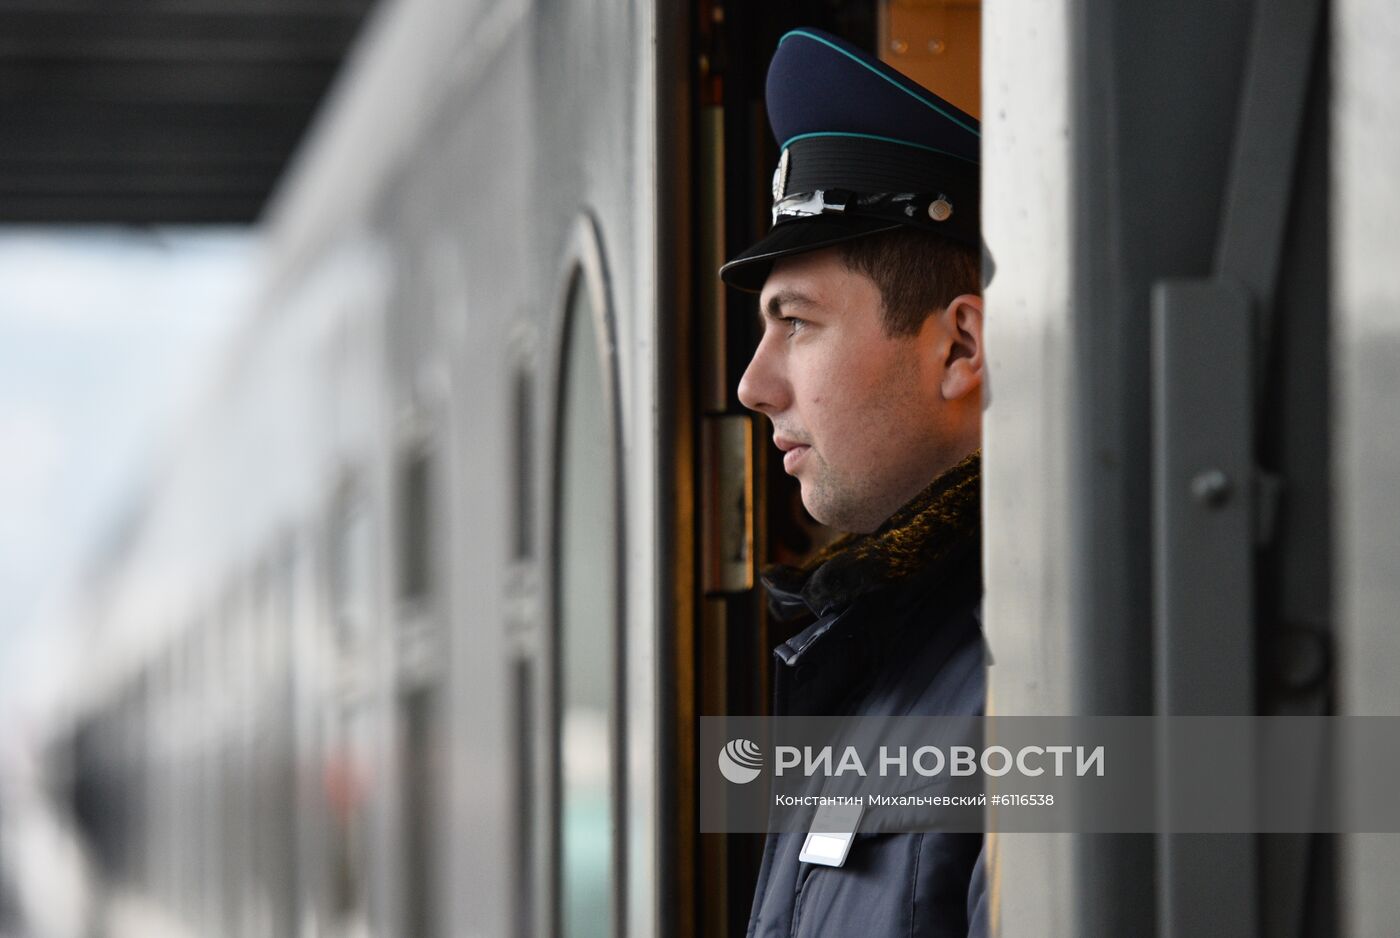 Прибытие пассажирского поезда  "Таврия" в Крым